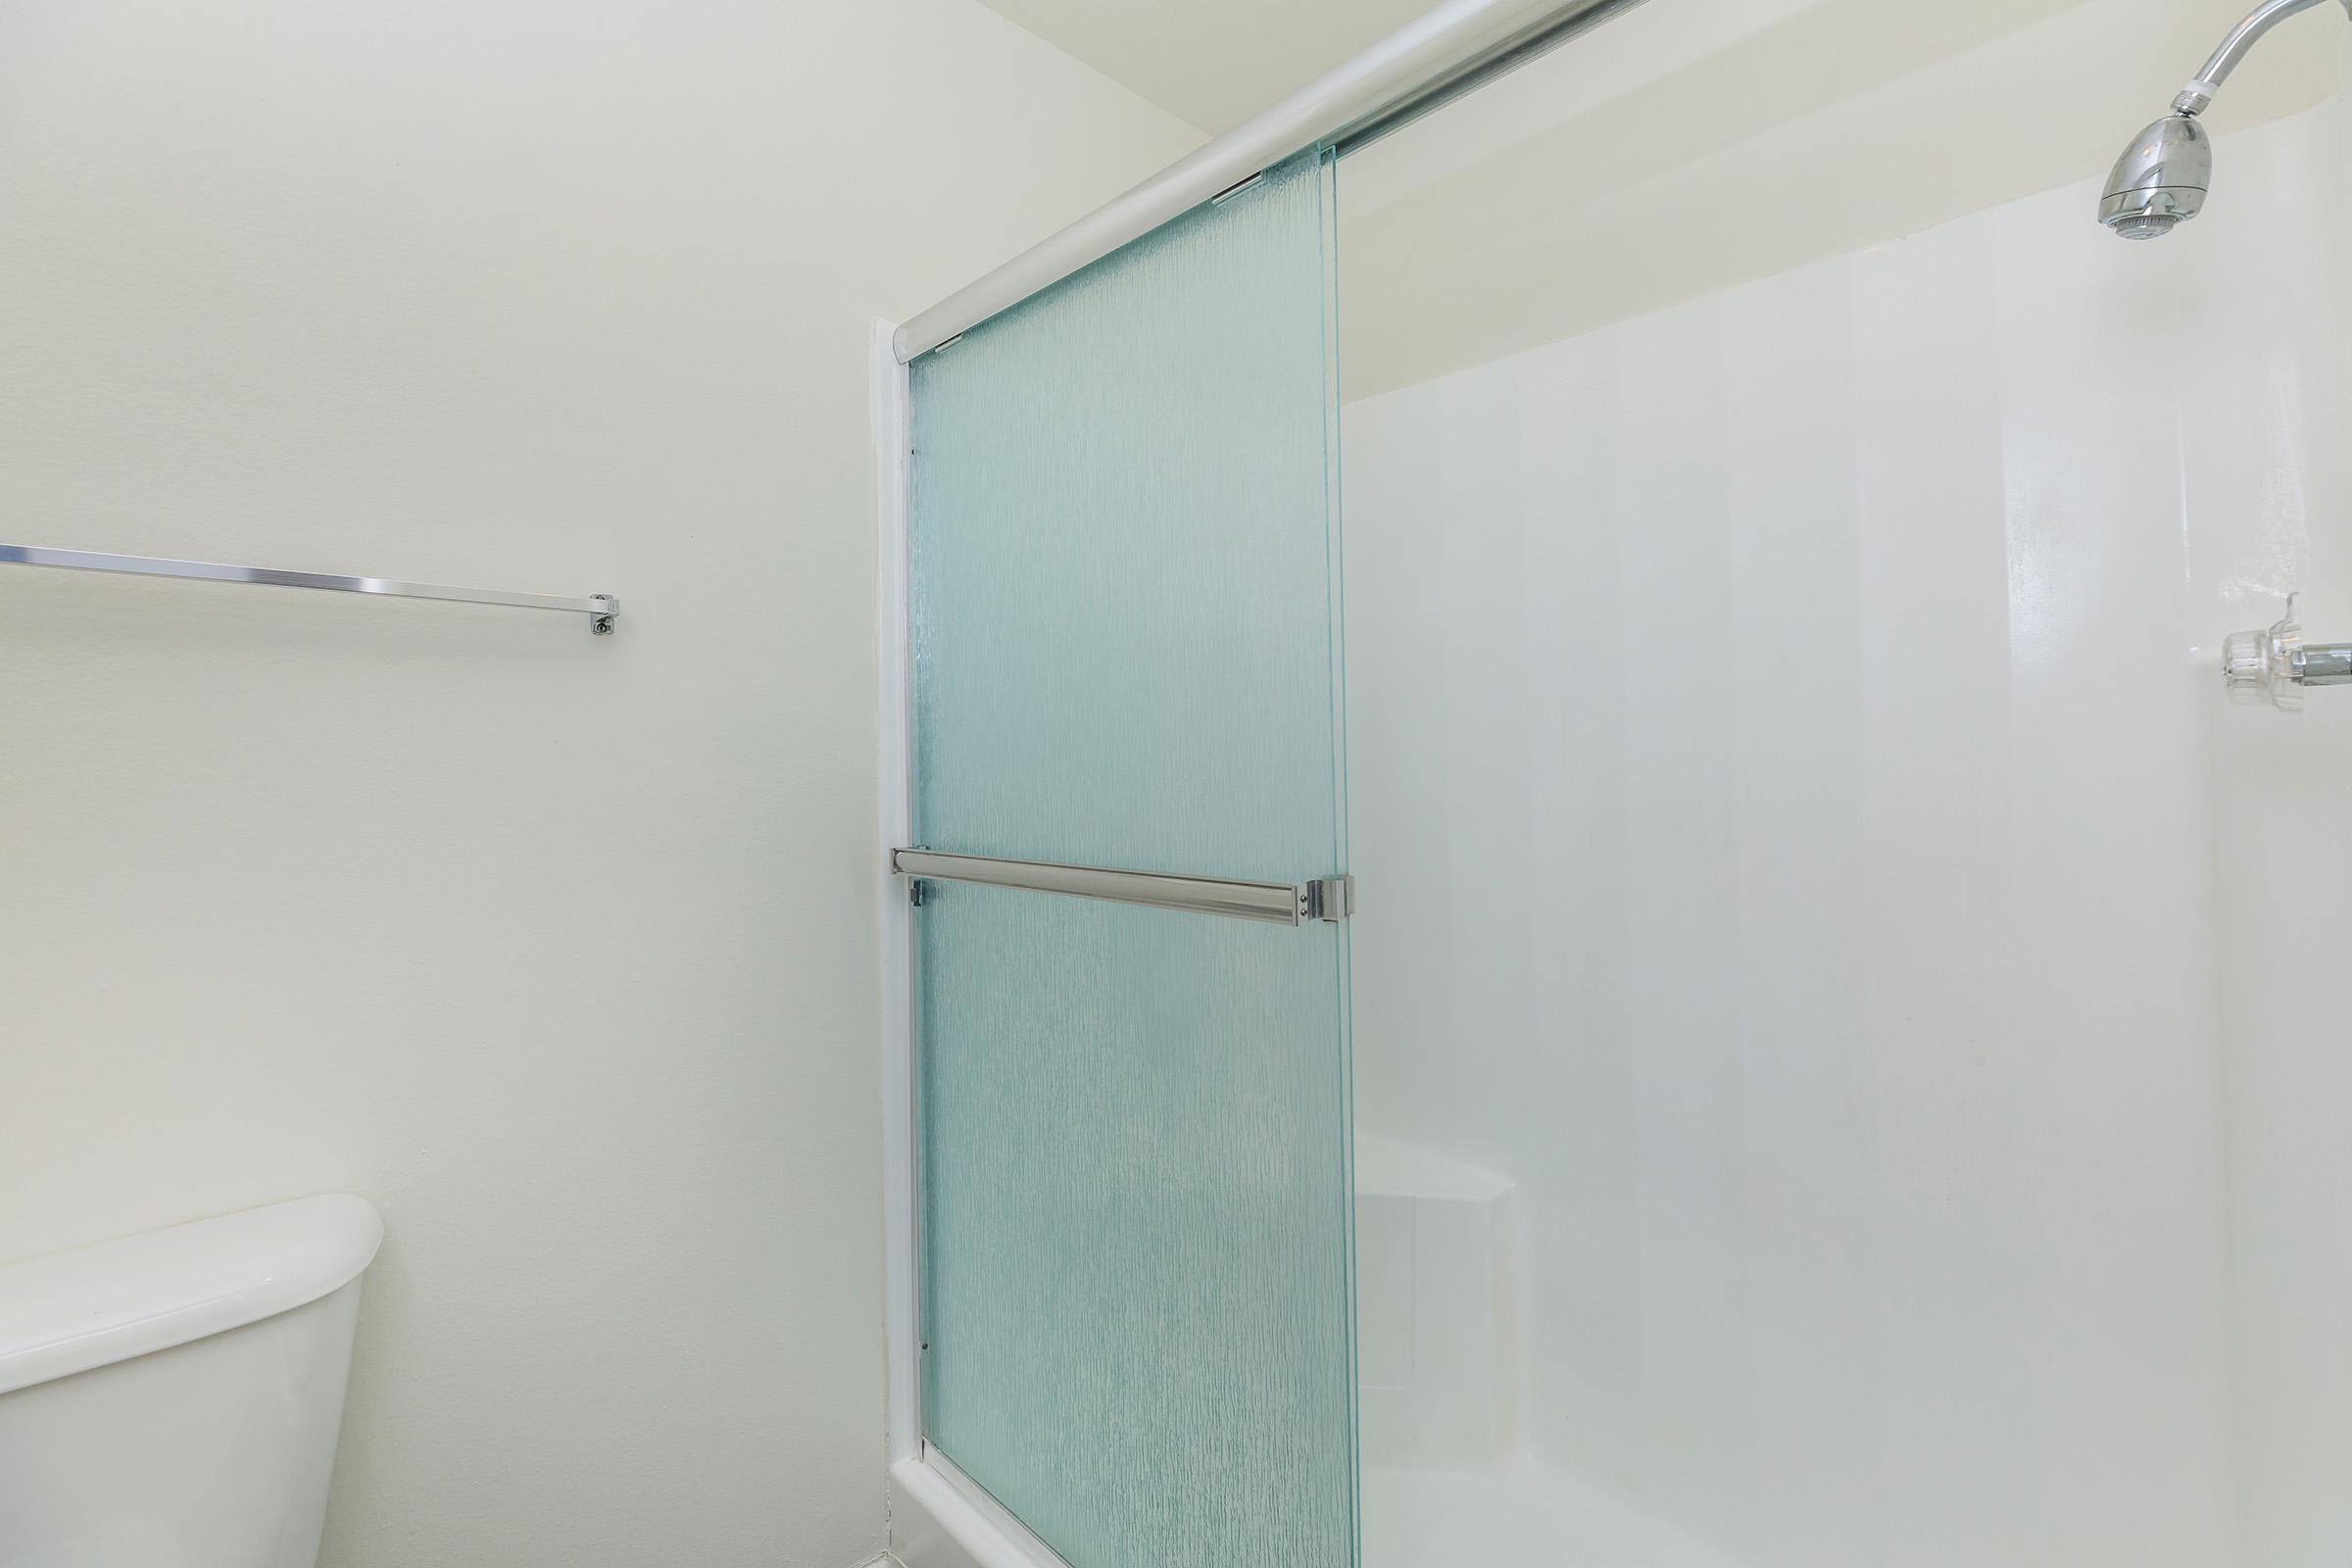 Bathroom with sliding glass shower door